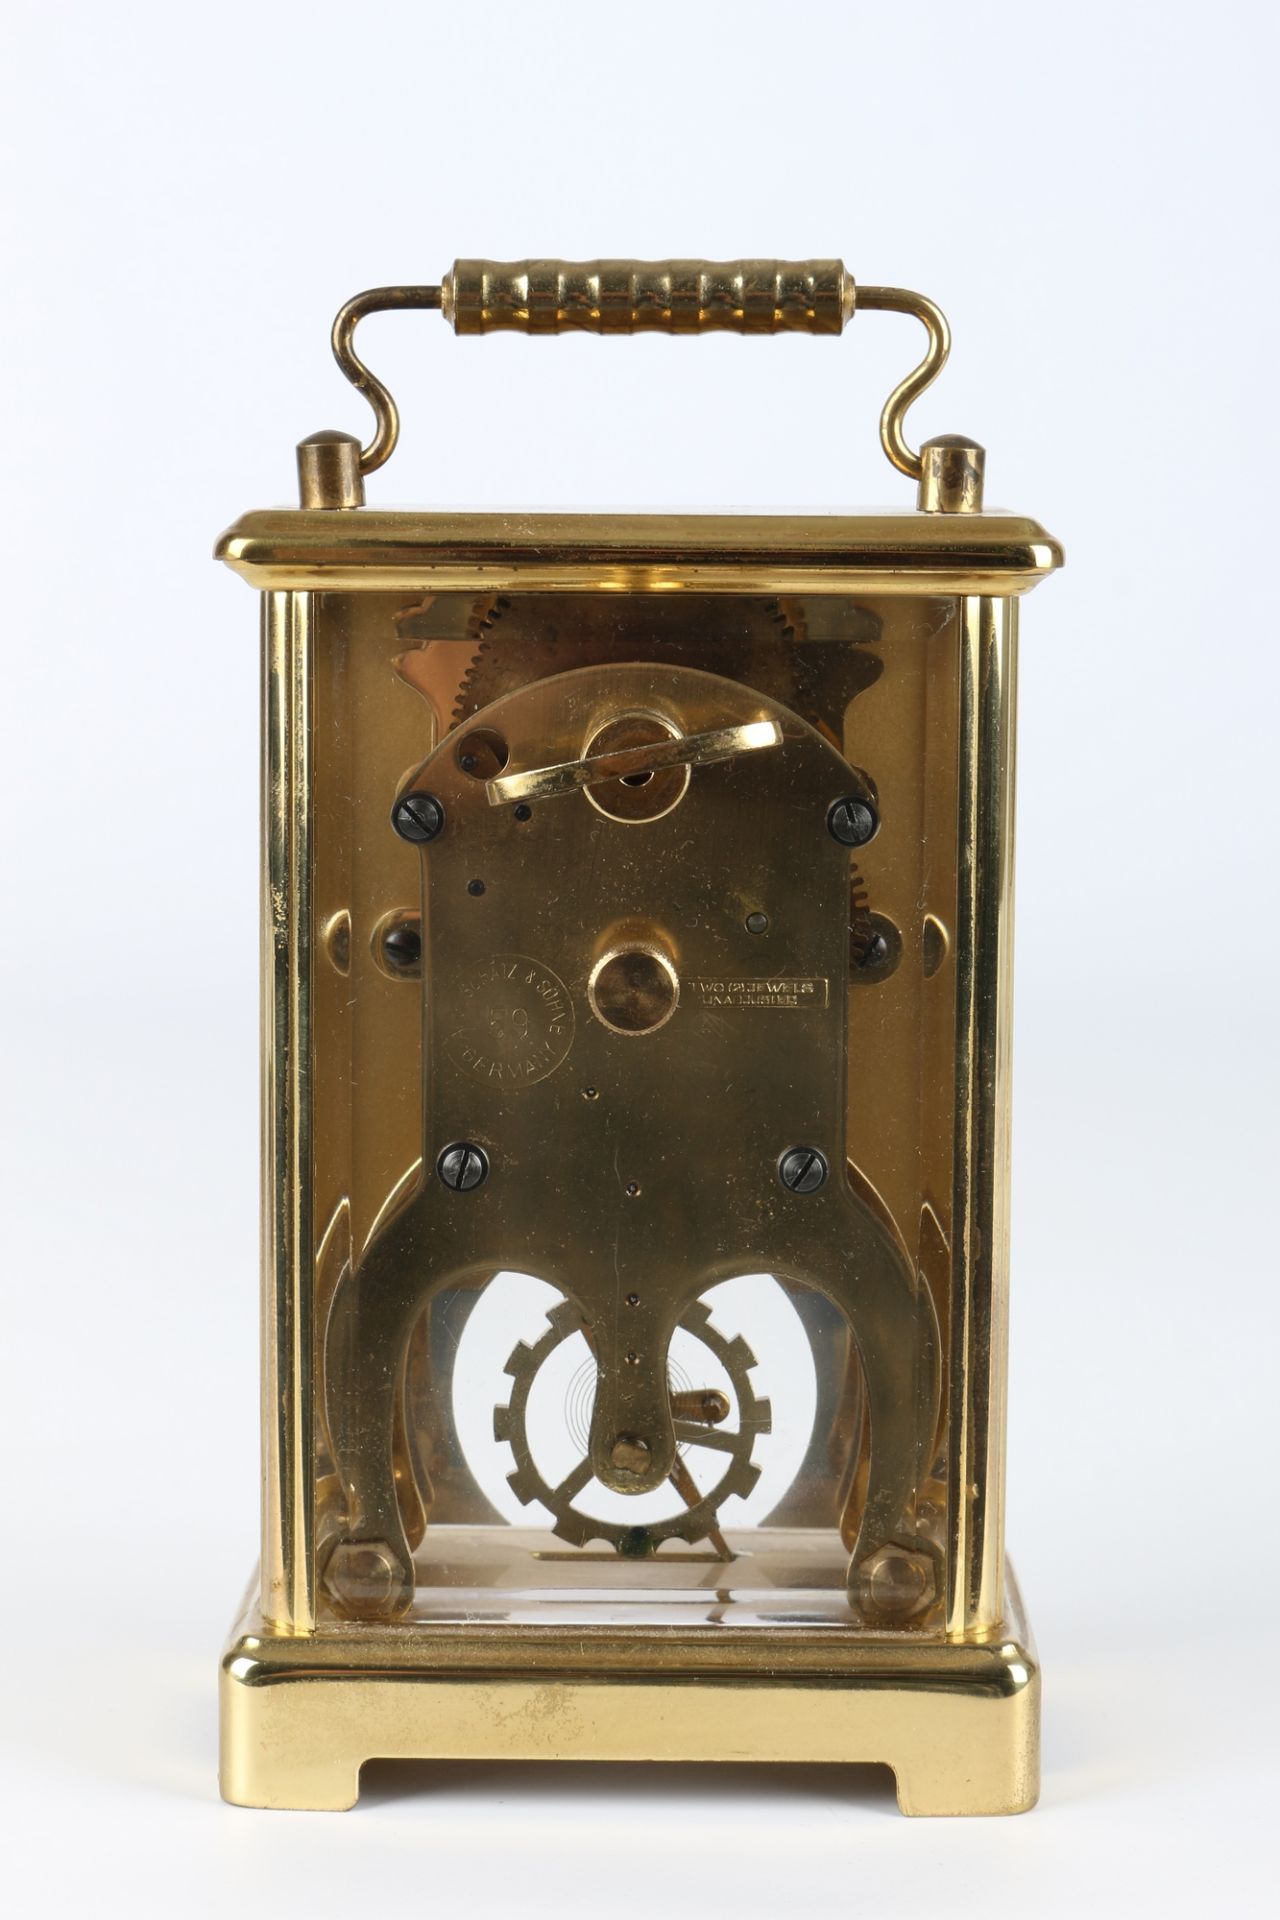 August Schatz Reiseuhr, carriage clock, - Bild 4 aus 5